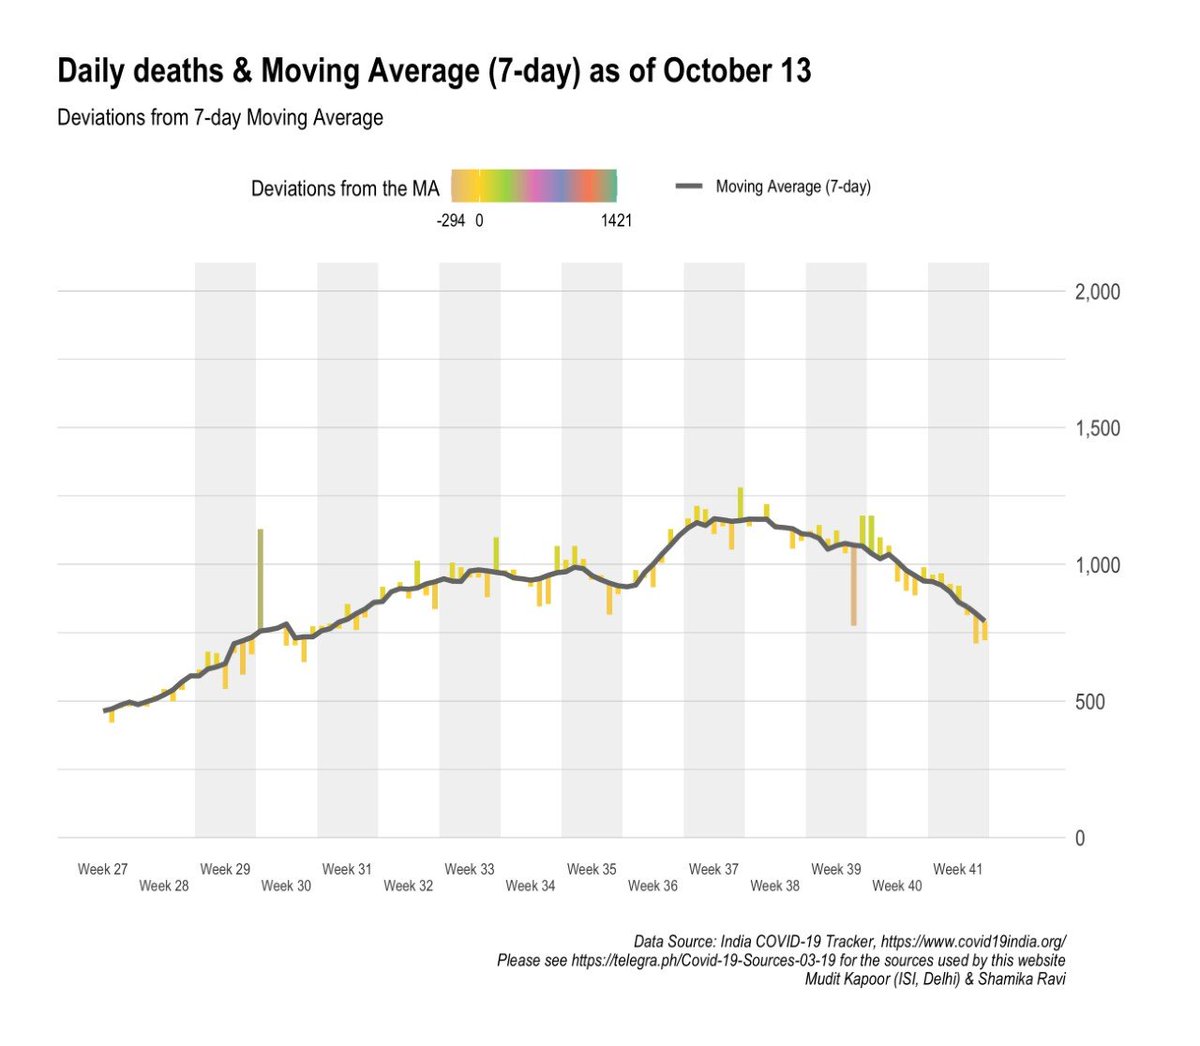 Daily deaths: steady decline